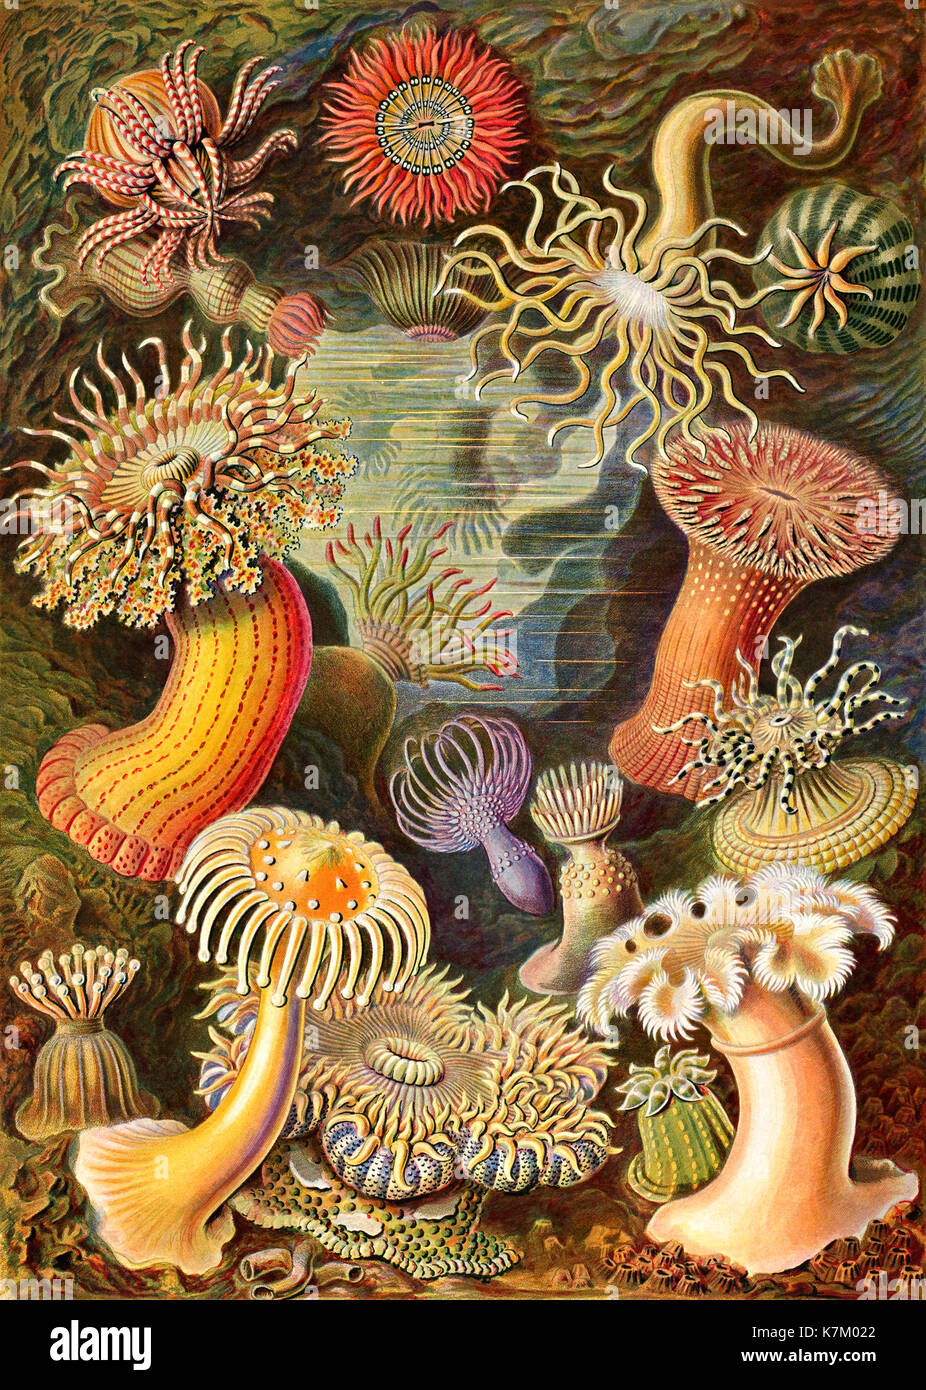 Ernst HAECKEL (1834-1919) biologo tedesco, medico, naturalista. Anemoni di mare dalla sua Kunstformen de Natur (forme d'arte della natura) pubblicato 1904 Foto Stock